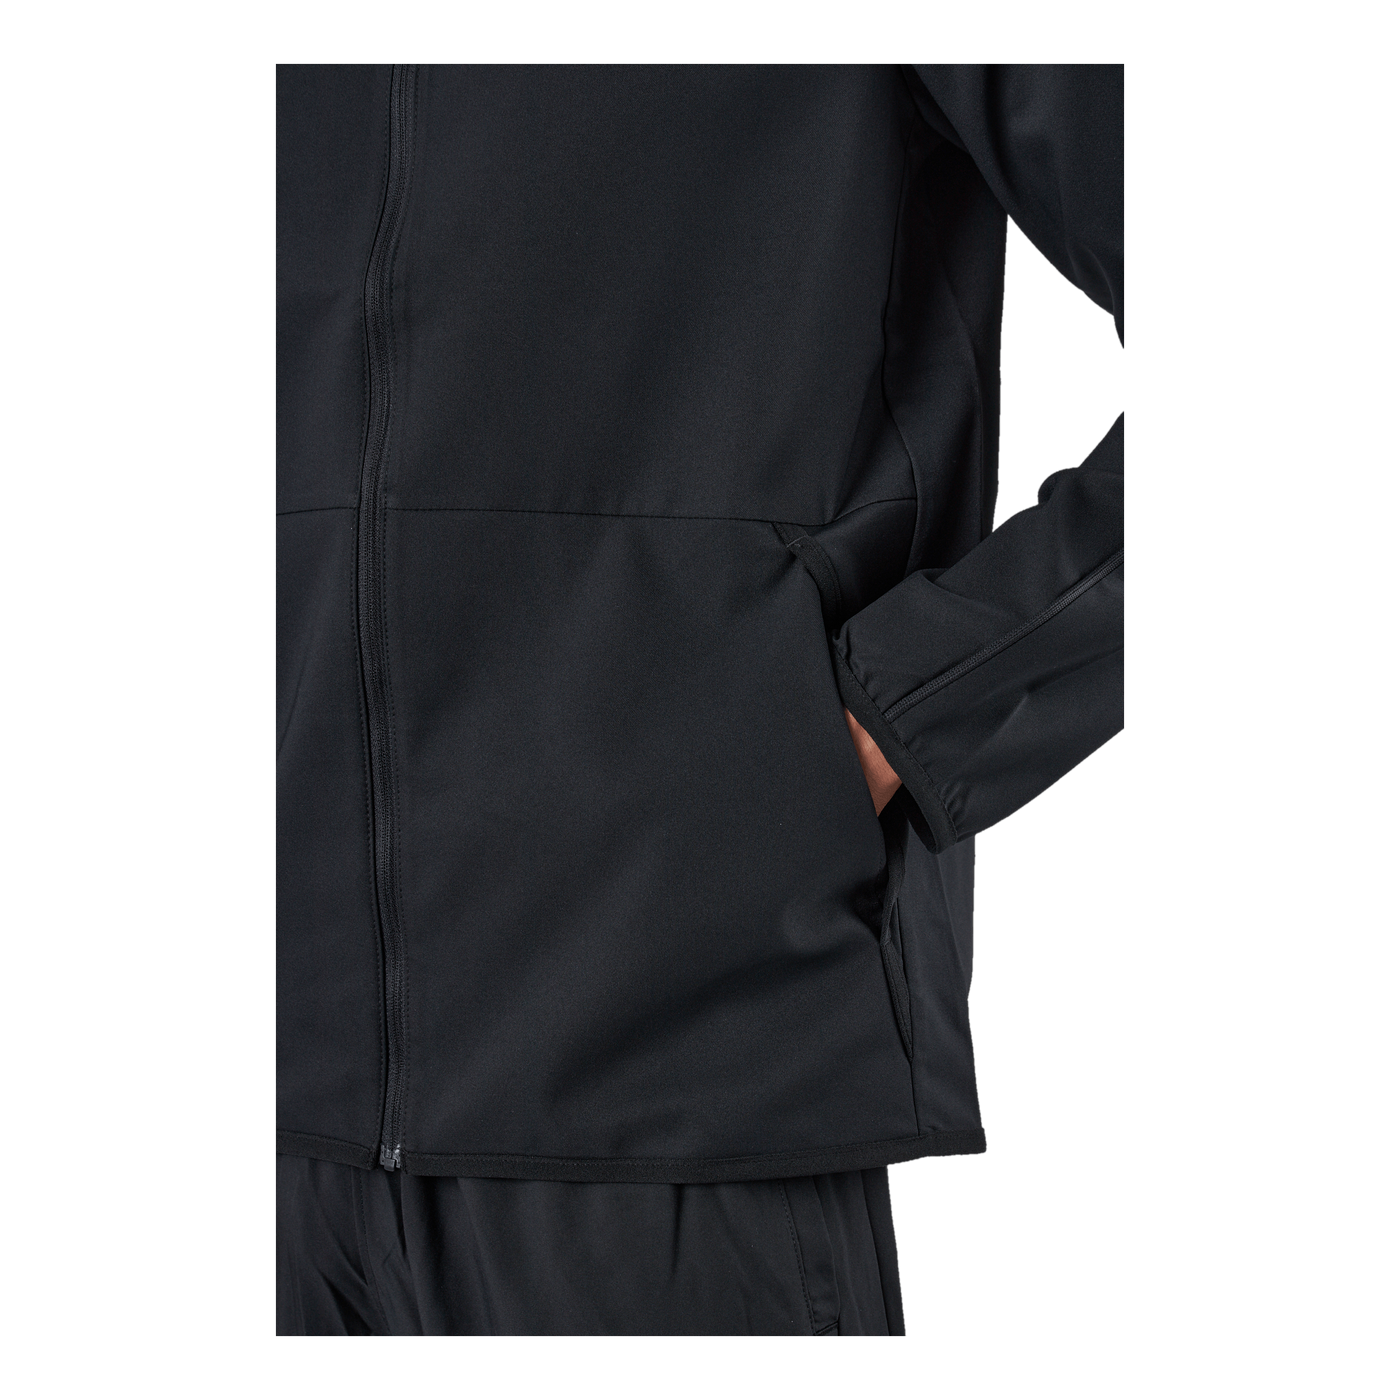 Dri-FIT Men's Woven Training Jacket BLACK/BLACK/WHITE